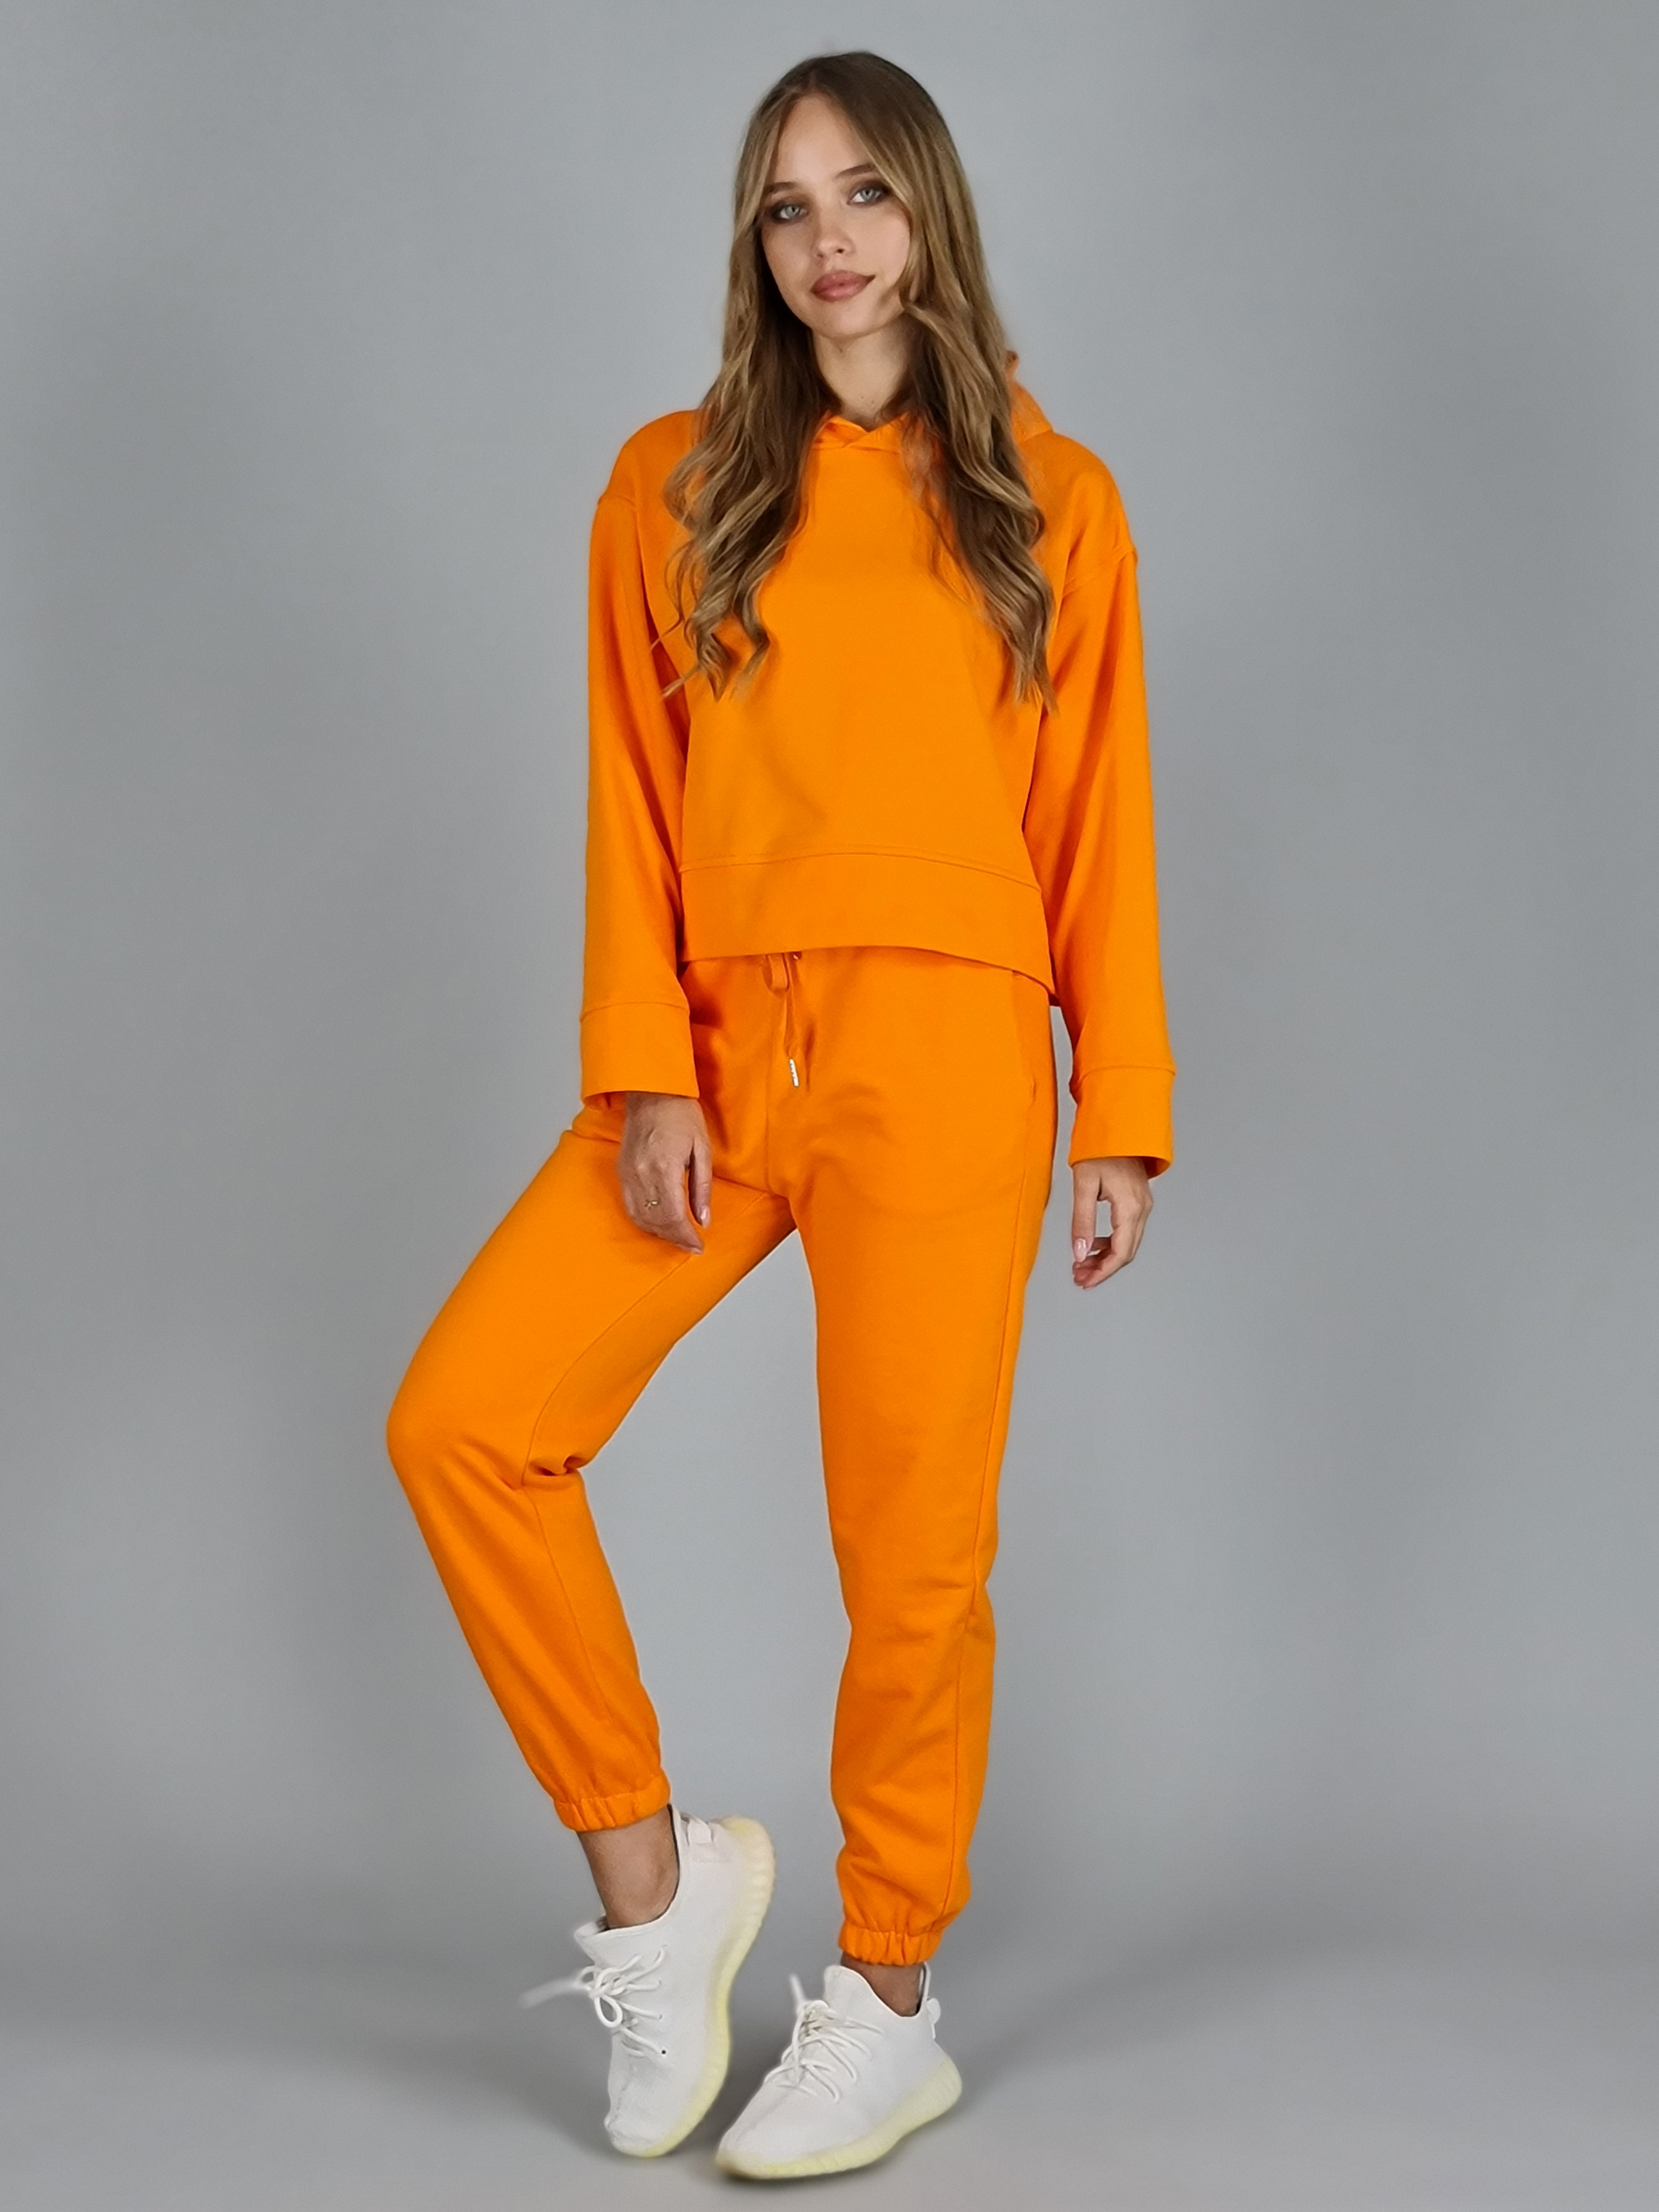 Оранжевый спортивный костюм. Оранжевый спортивный костюм женский. Ярко оранжевый спортивный костюм. Ярко оранжевый спортивный костюм женский.